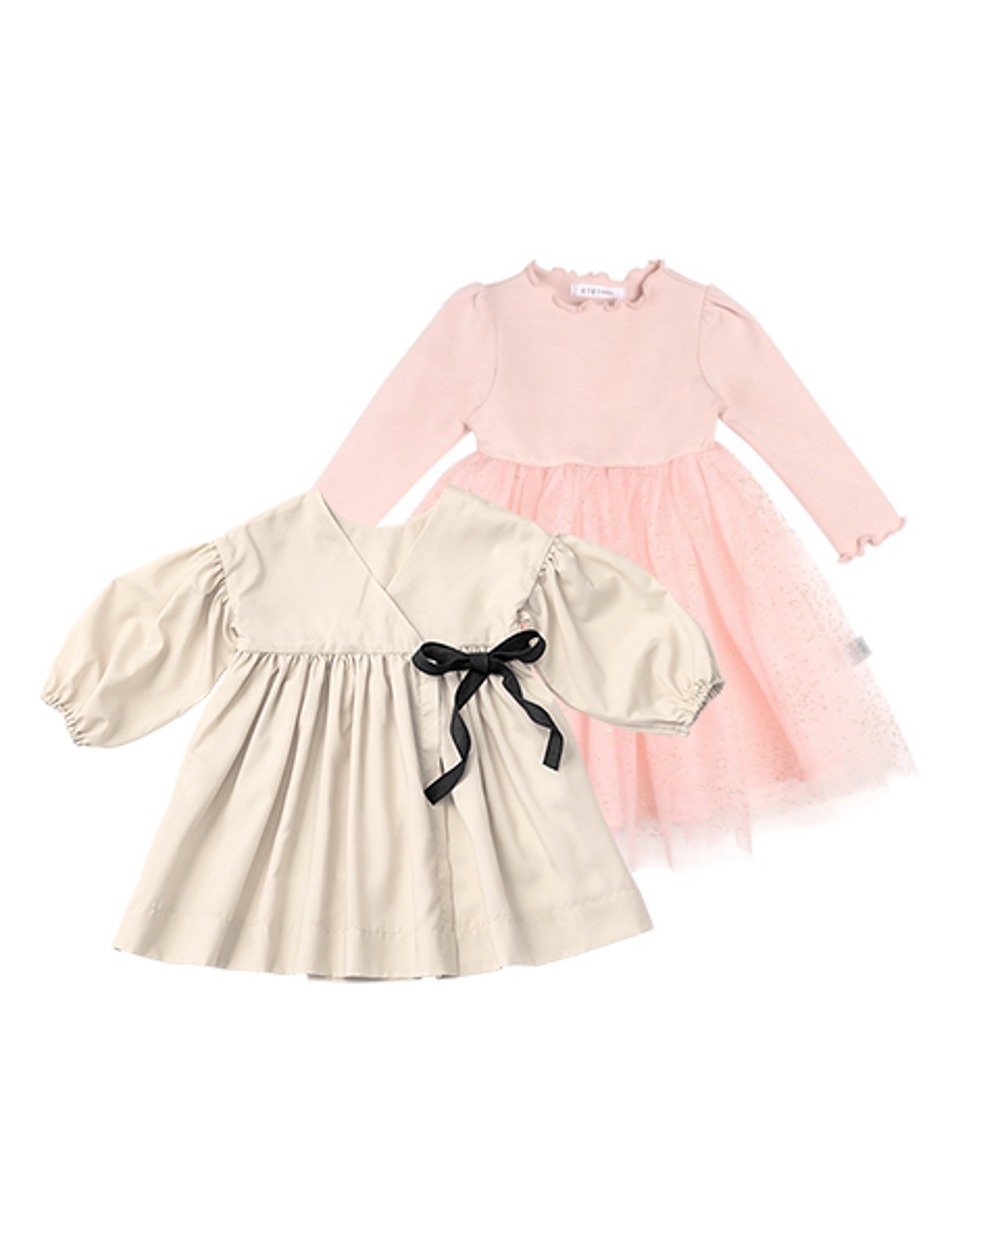 [설빔세트] 유레카 1 shell + 올리비아 튤 드레스 핑크 baby